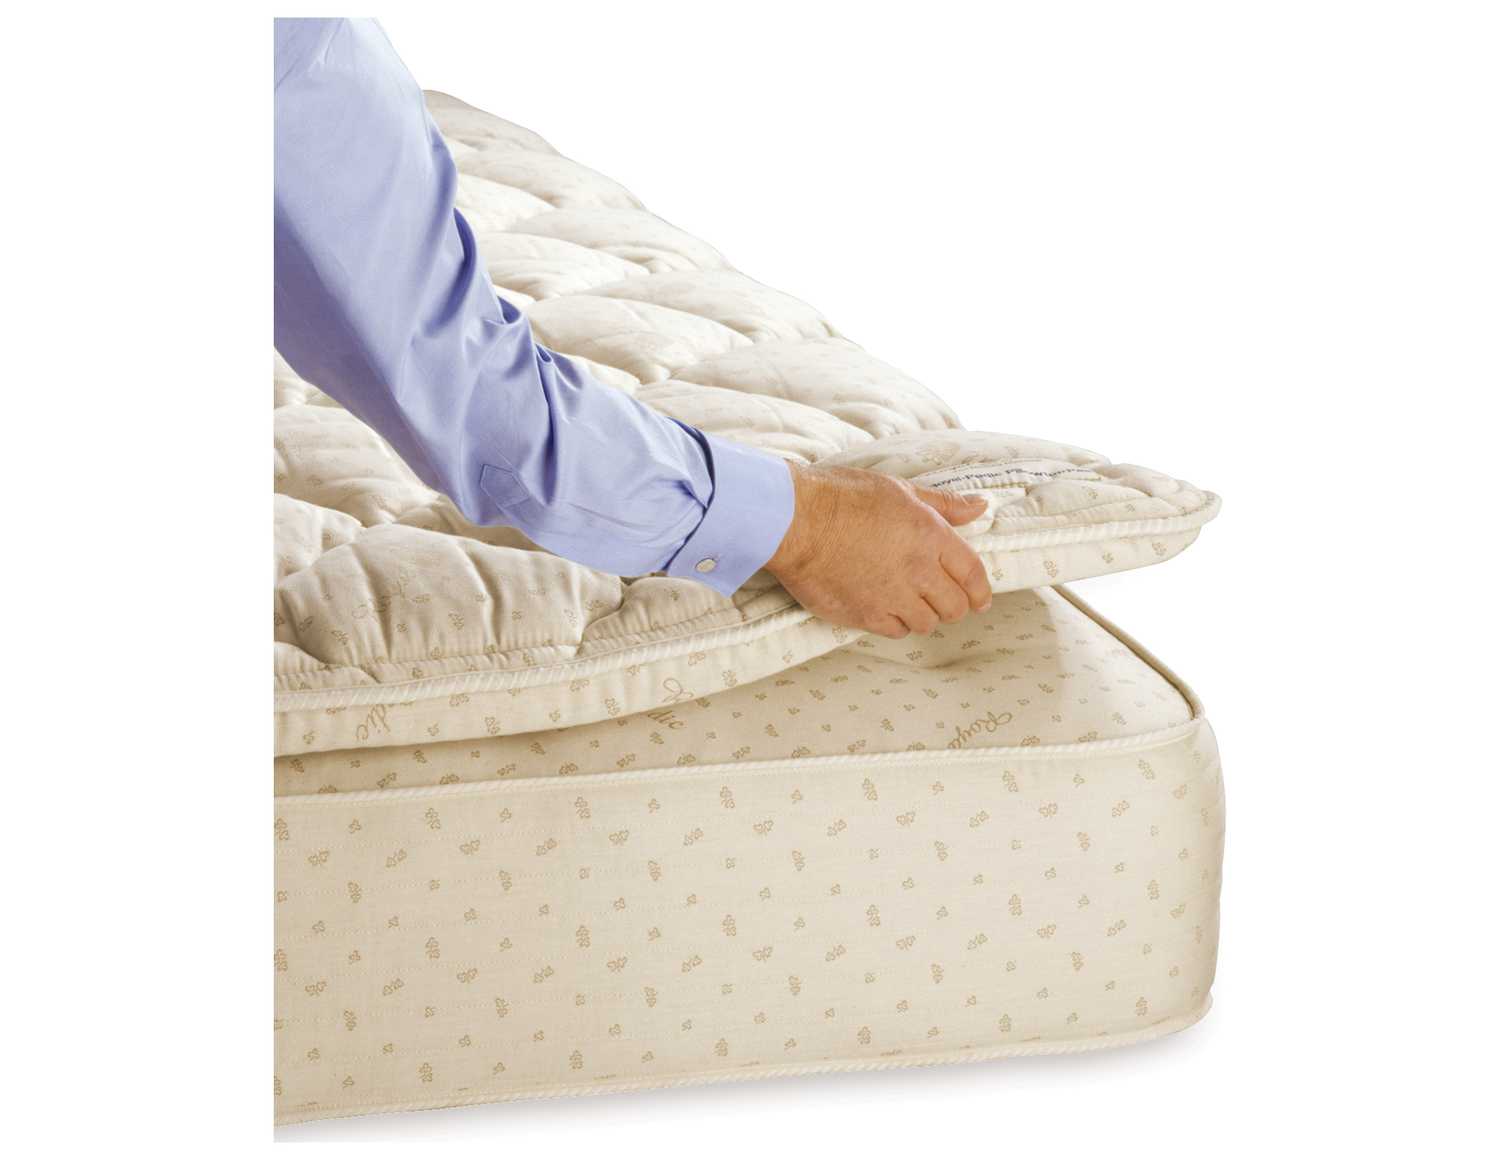 https://imgdataserver.com/items/royal-pedic-classic-foam-mattresse-rprpacpp3_zm.jpg